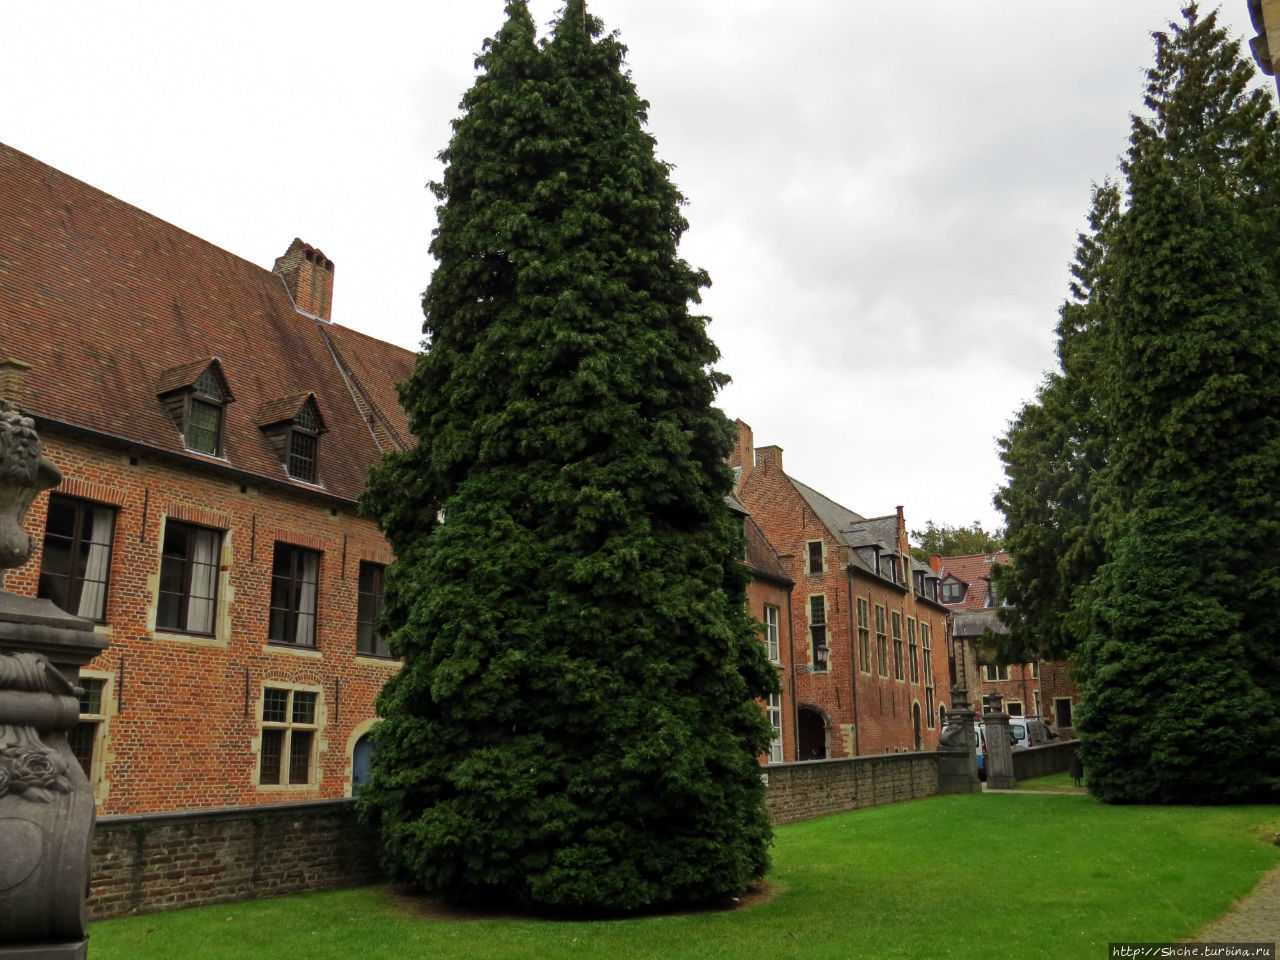 Фламандский «Бегинаж» в Левене (объект ЮНЕСКО номер 855-011)